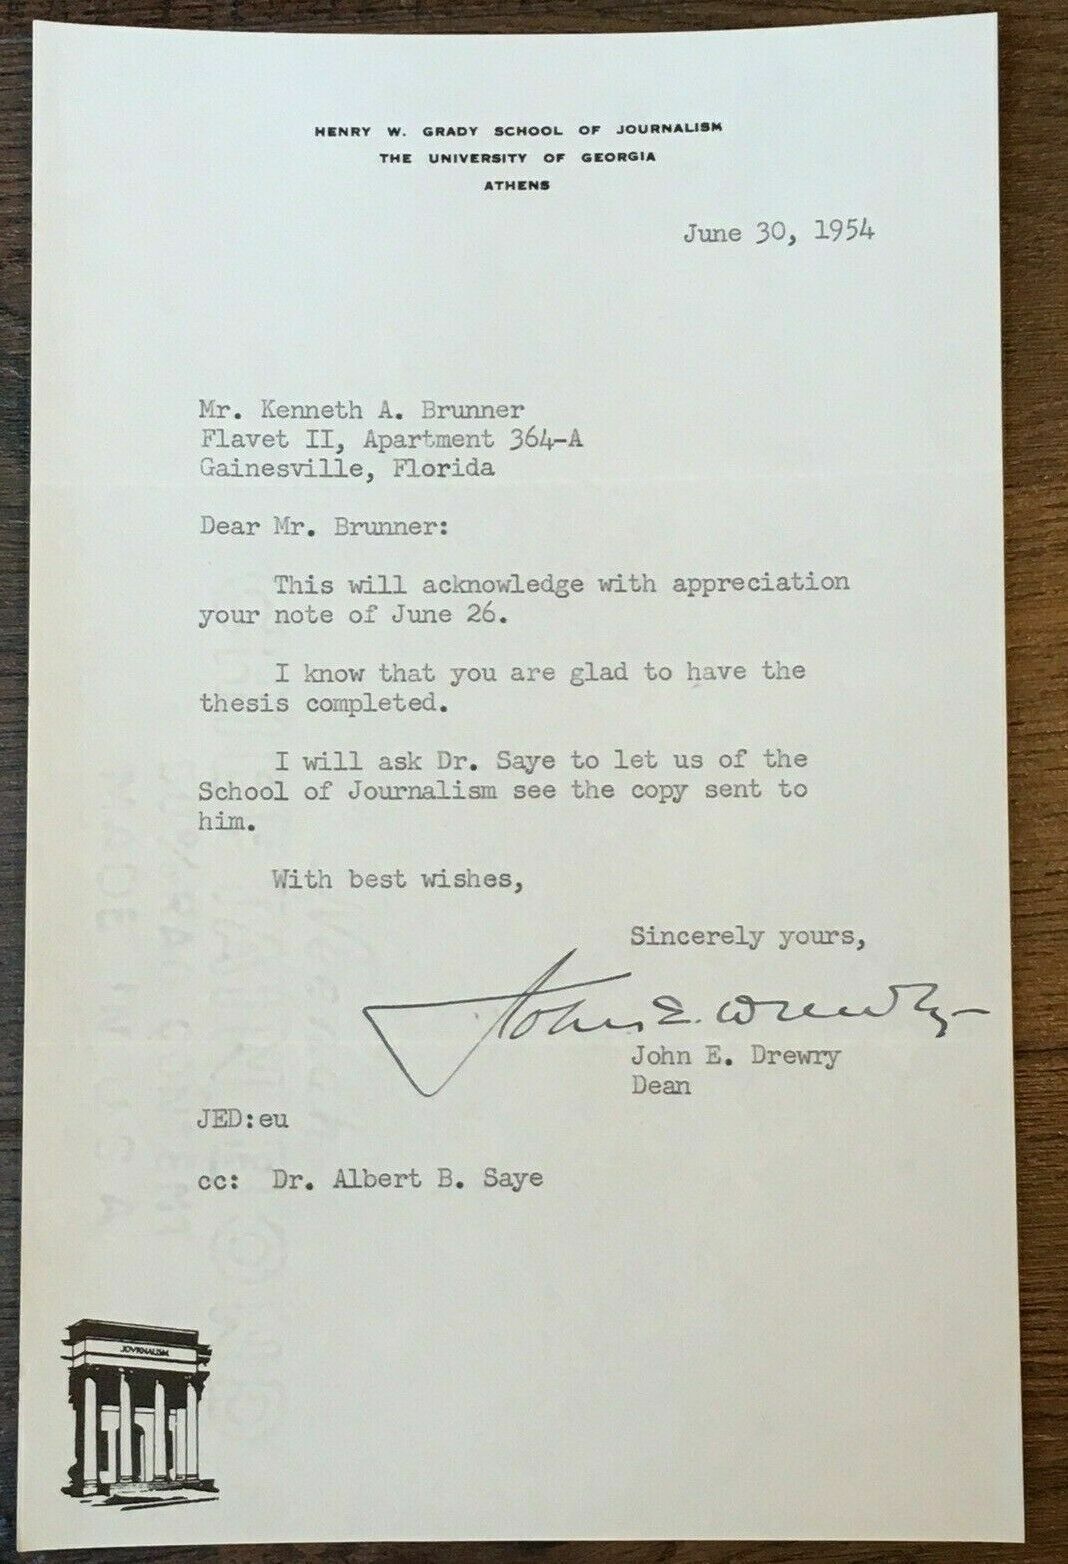 Vtg June 1954 University of Georgia Letter w/ Signature of John E Drewry - Dean